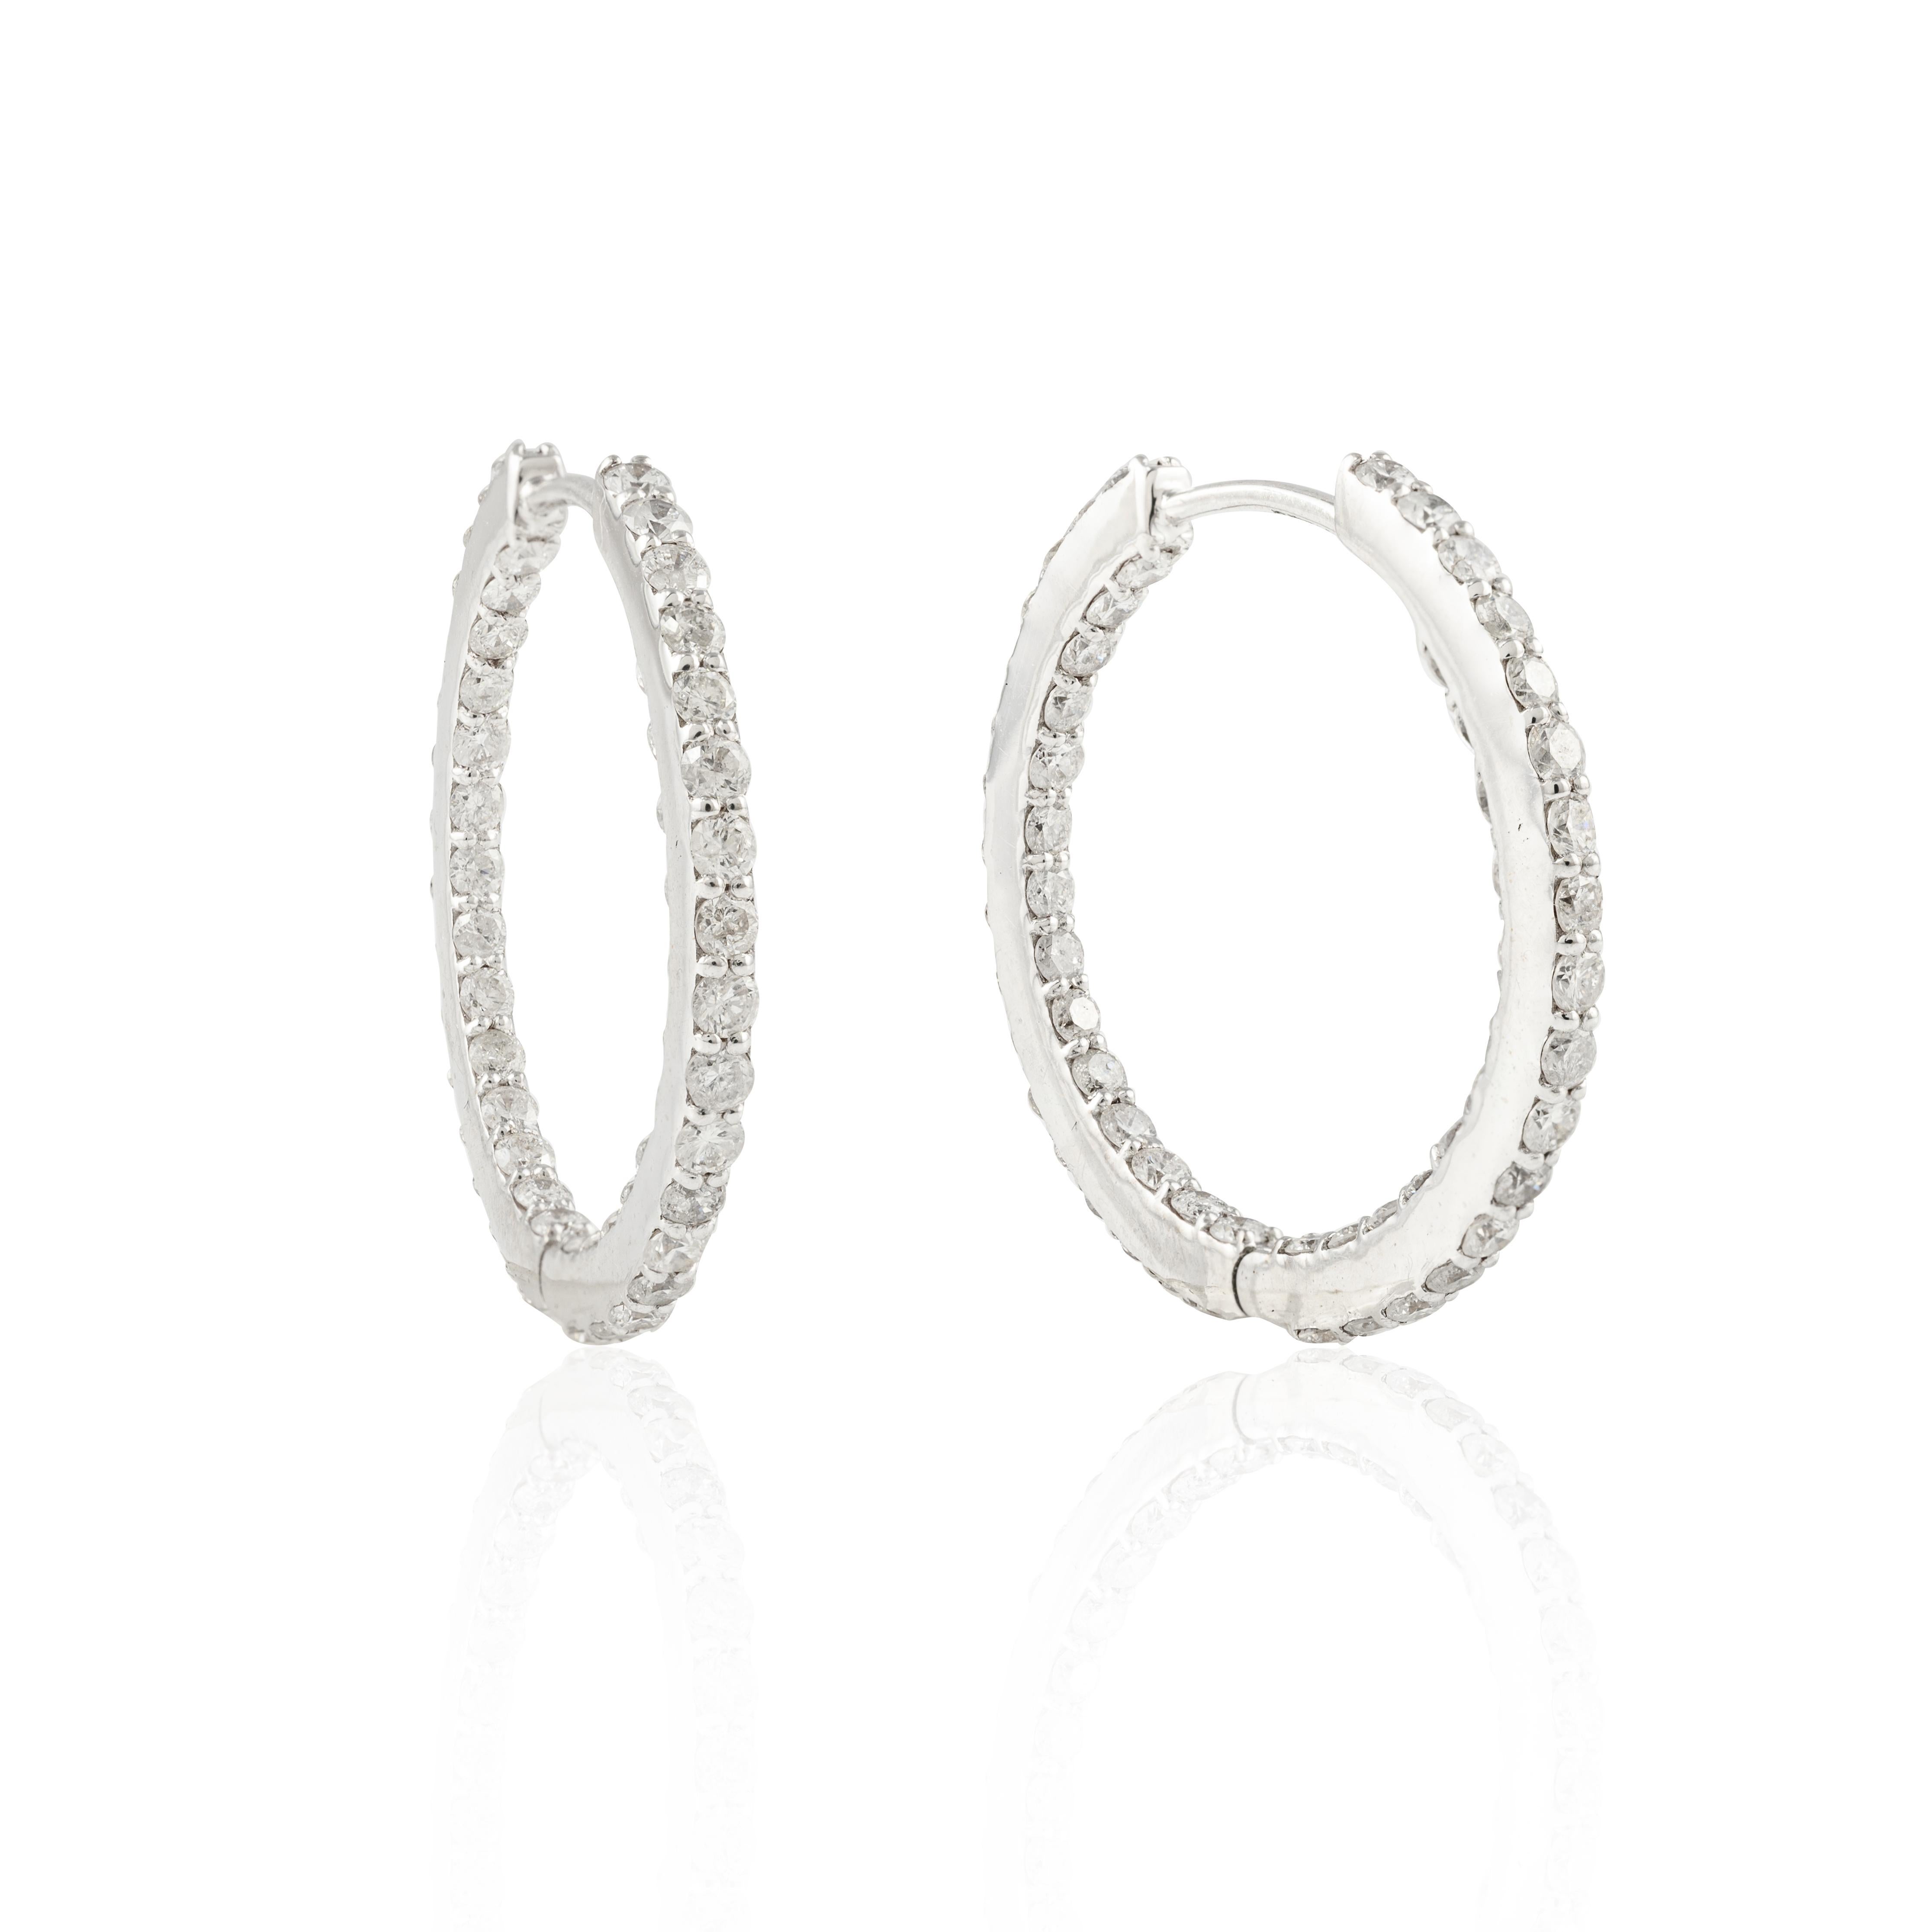 Modern 2.8 Carat Hoop Diamond Earrings For Women Studded in 18k Solid White Gold For Sale